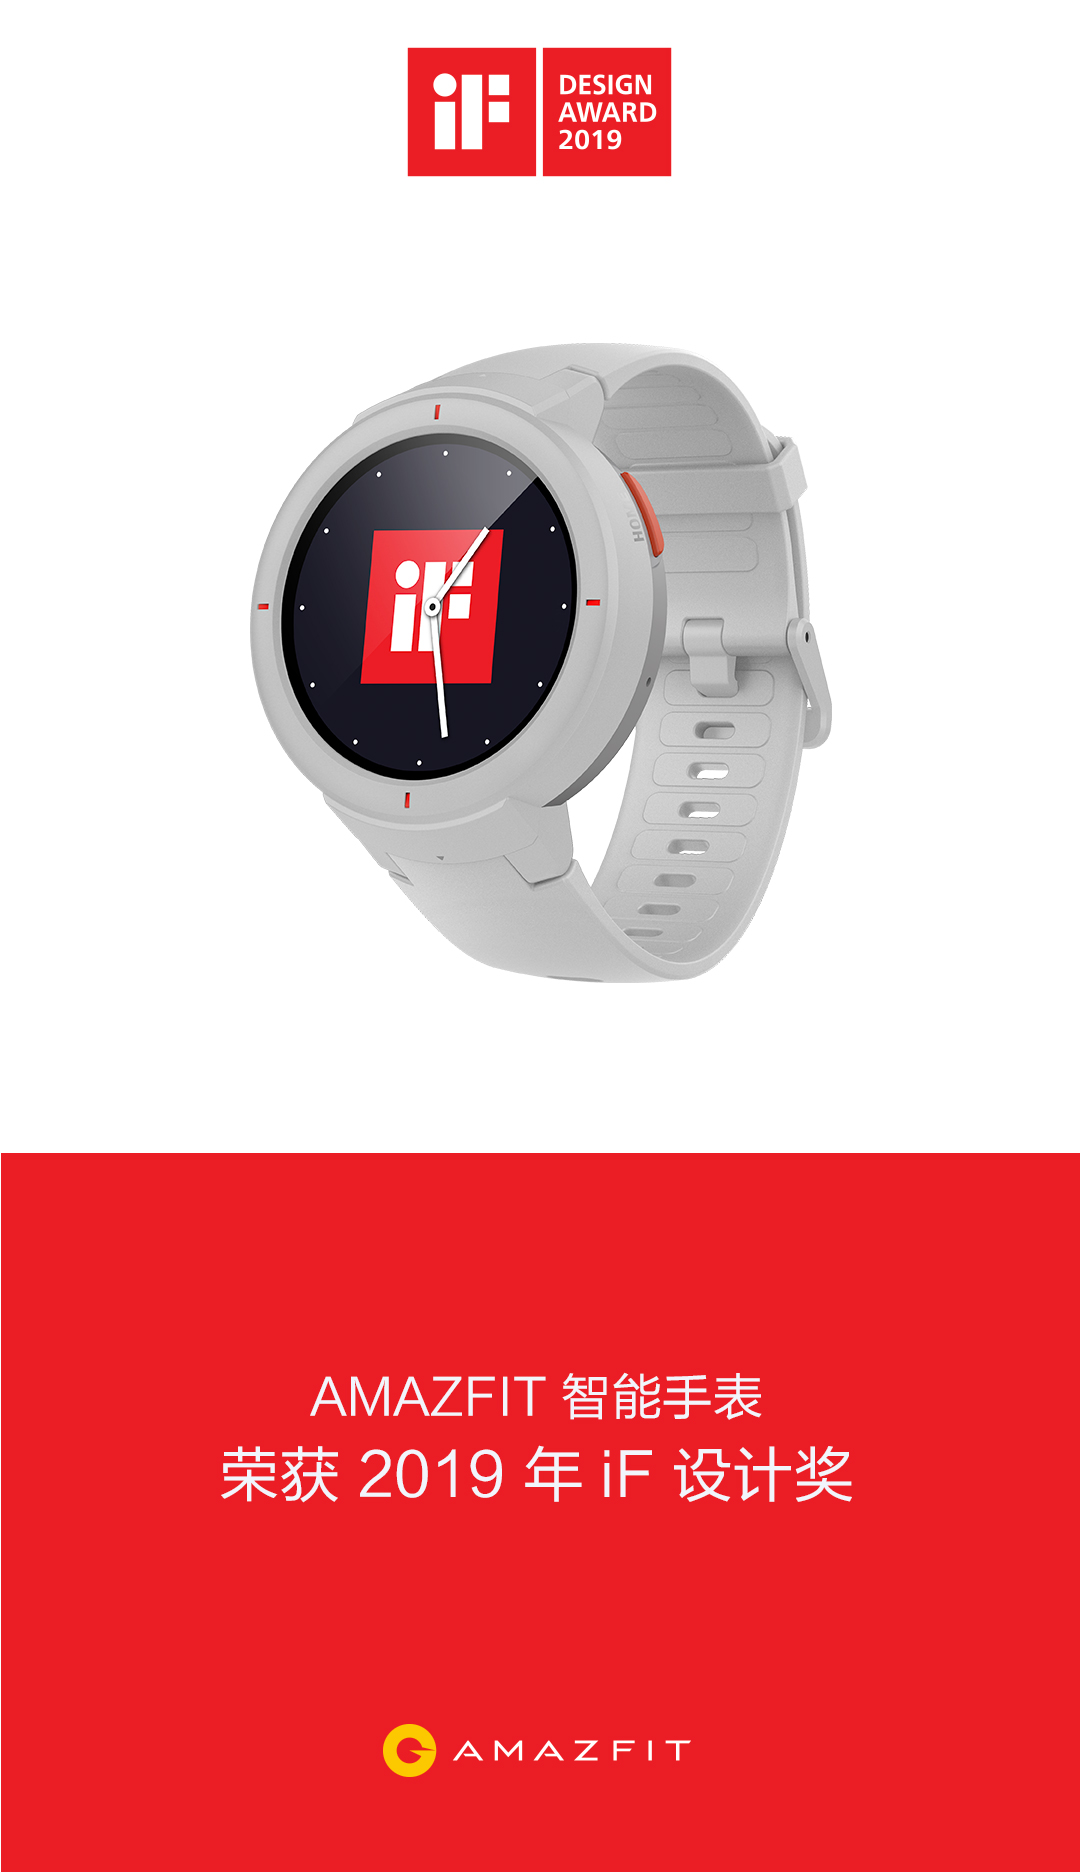 华米科技Amazfit智能手表荣获2019年iF设计大奖